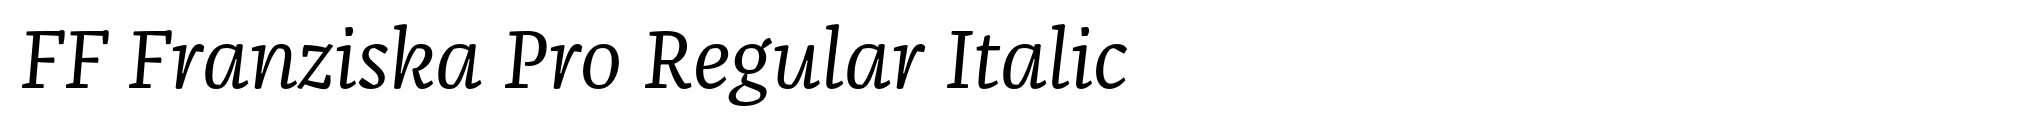 FF Franziska Pro Regular Italic image